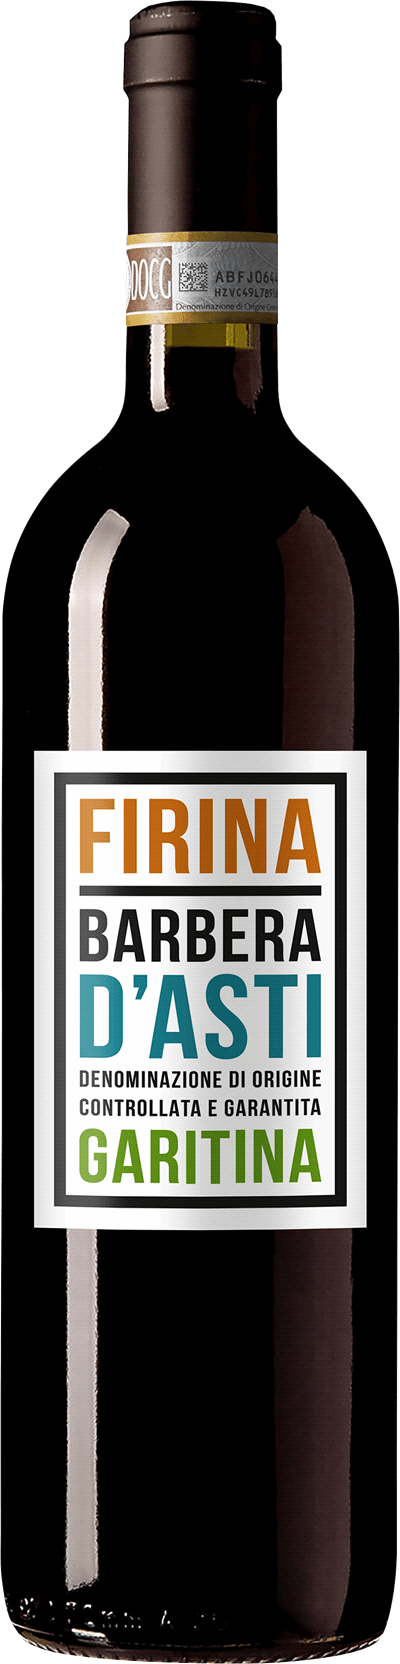 Firina Barbera d'Asti, 2020